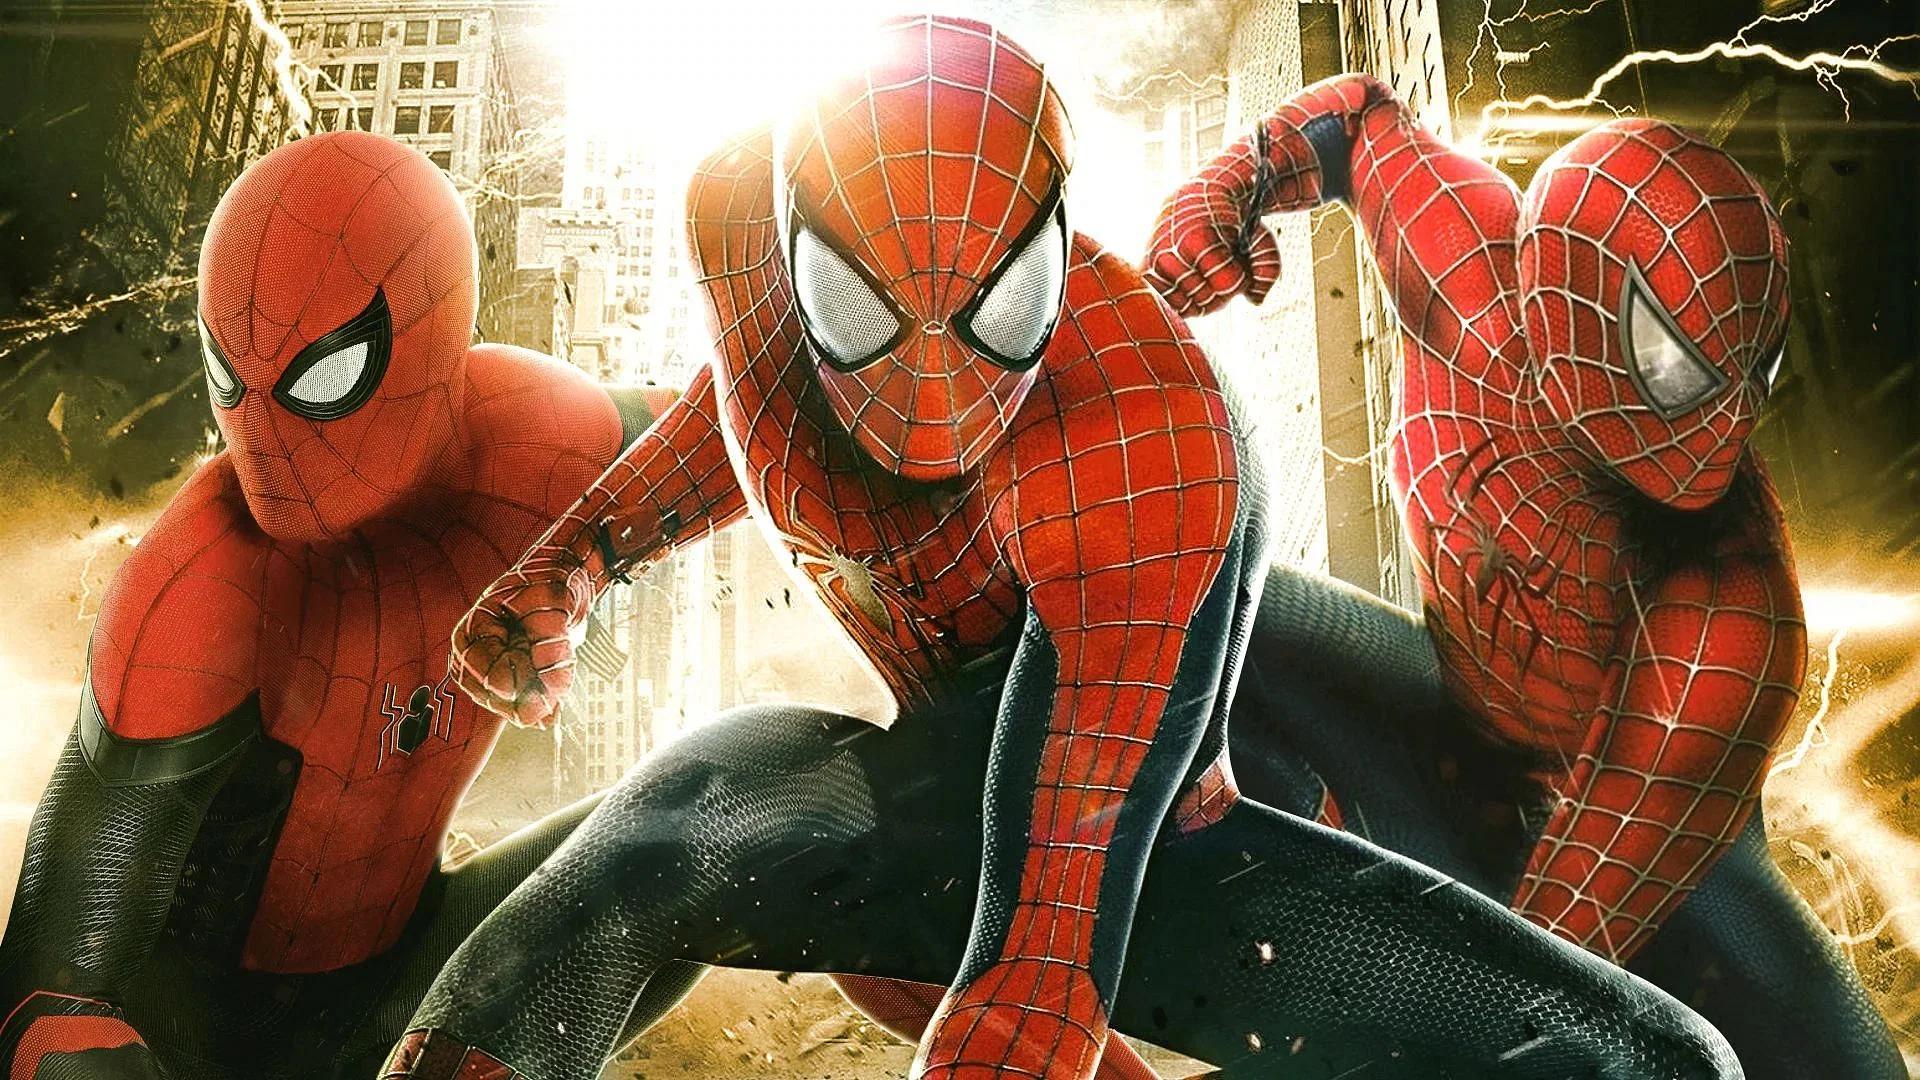 Spider-Man 4 Rumors Swirl Is Miles Morales Making His MCU Debut